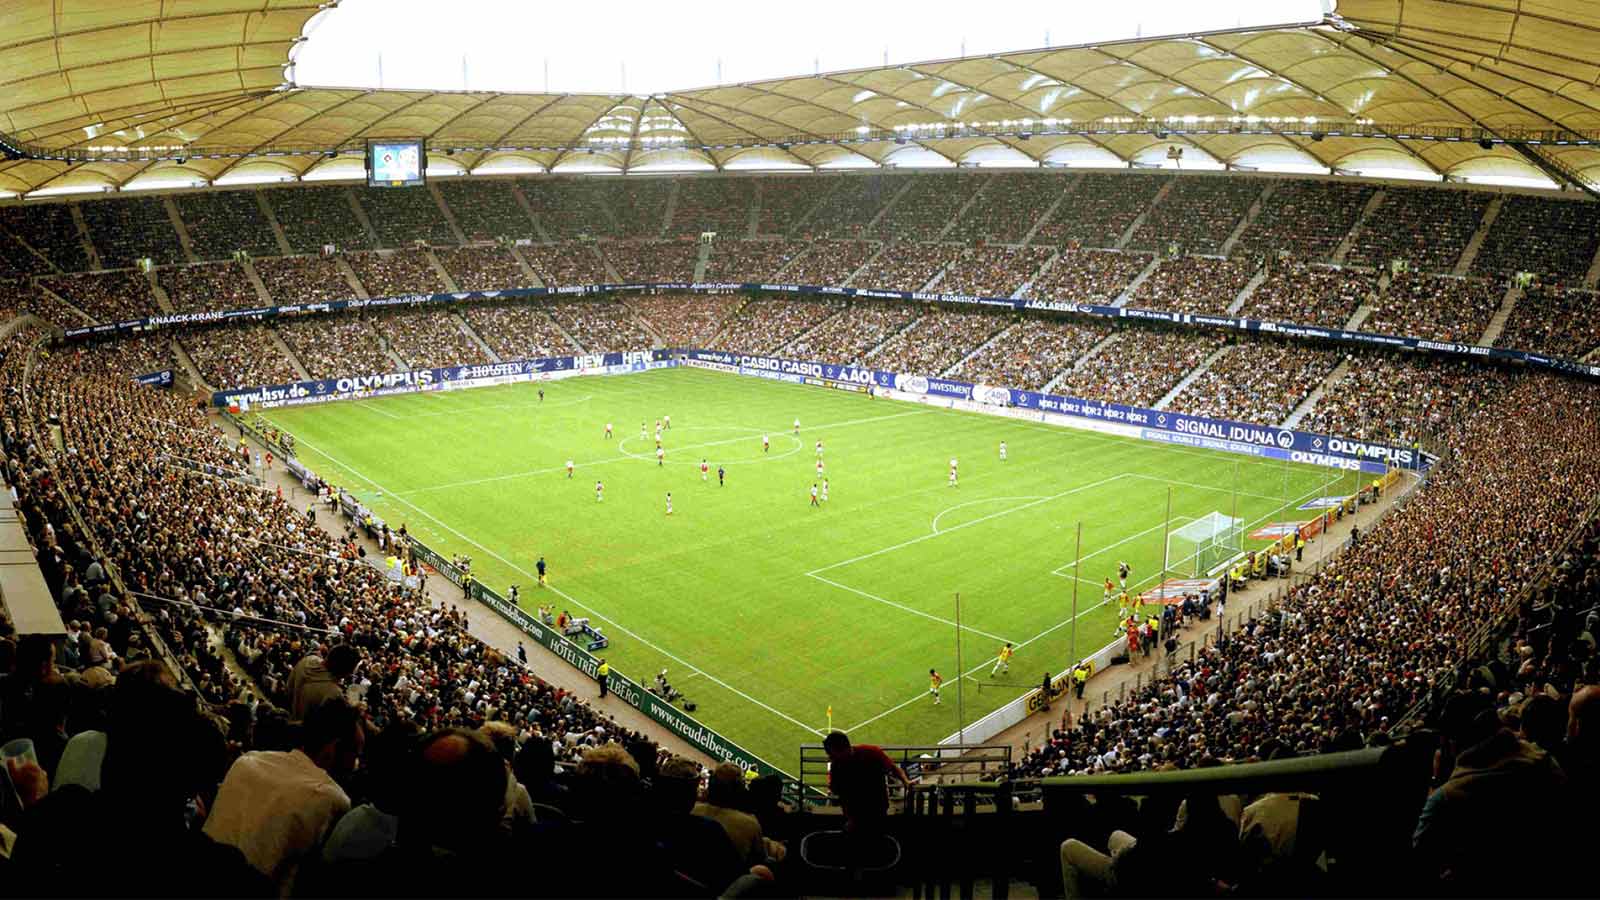 Fodboldstadion i Hamborg